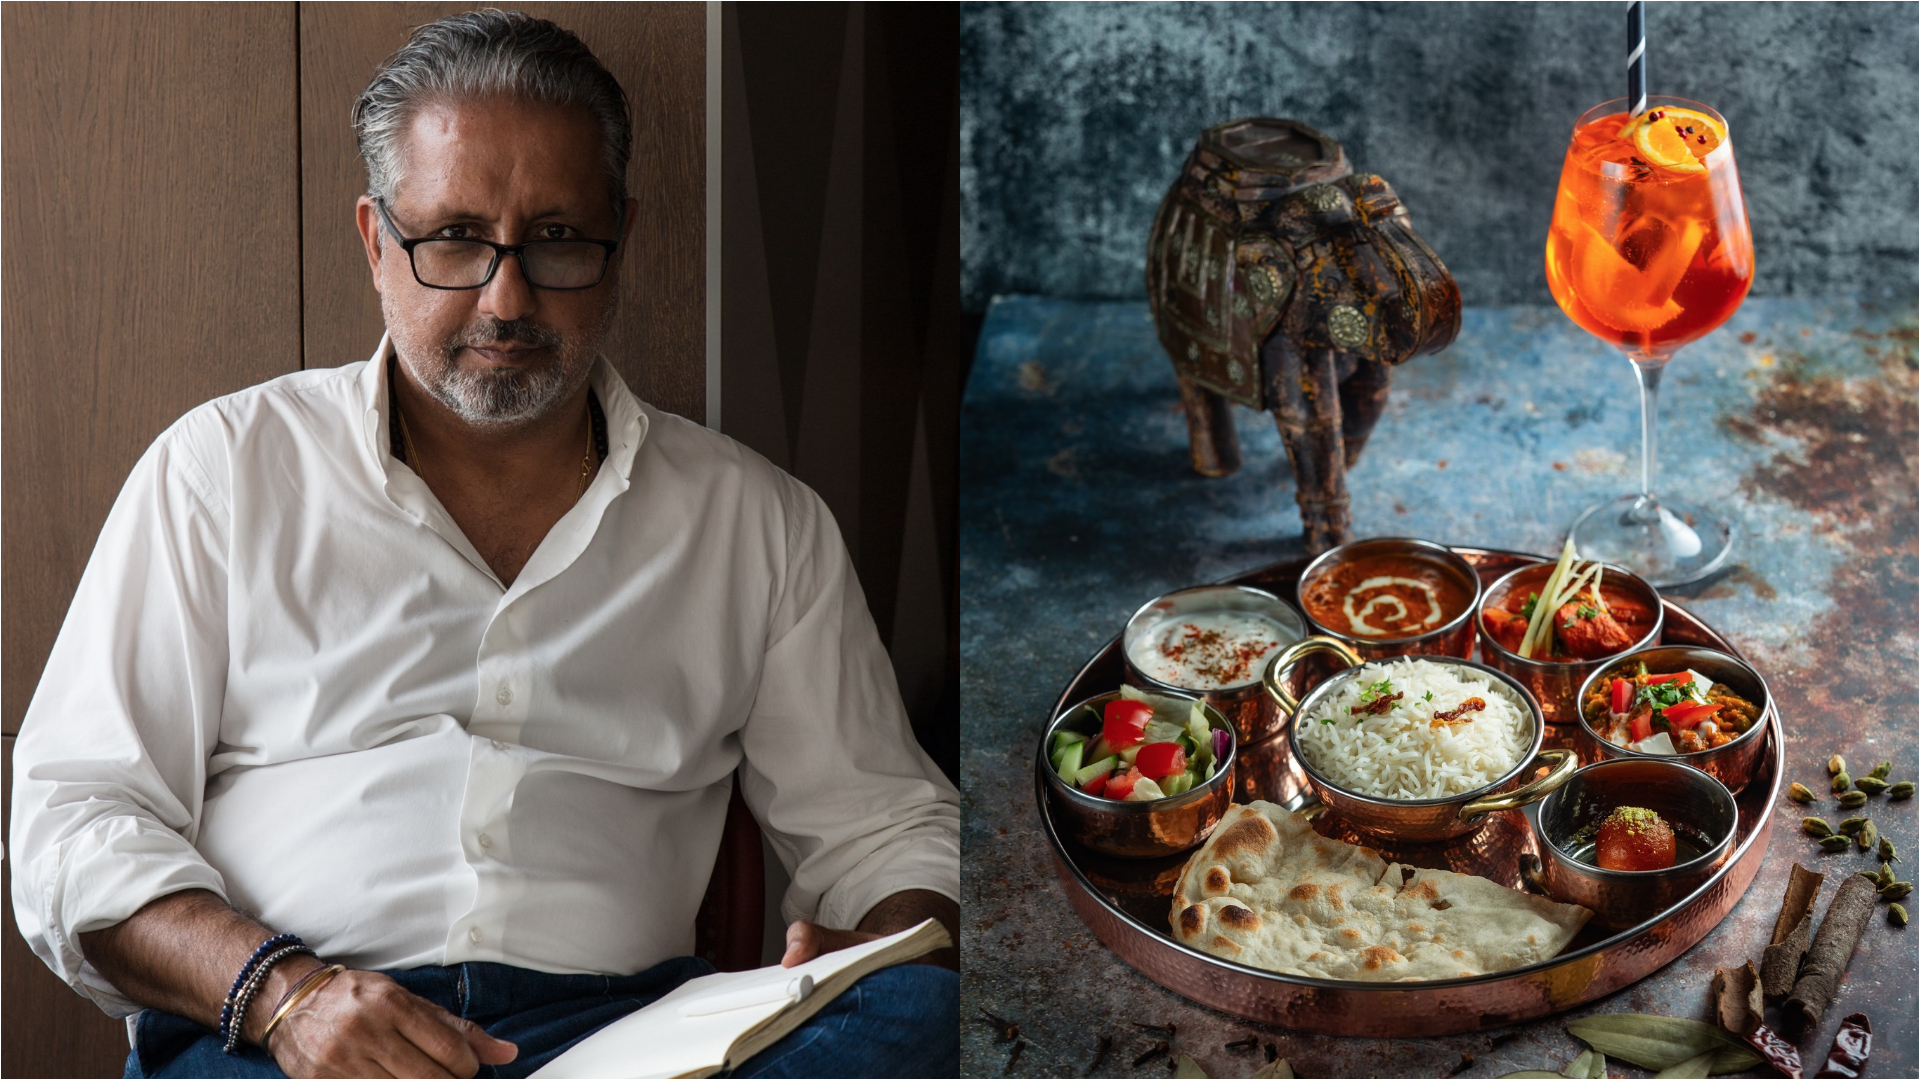 Apjával szembeszegült, Pest egyik legjobb indiai éttermese lett – Interjú az Indigo tulajdonosával | nlc